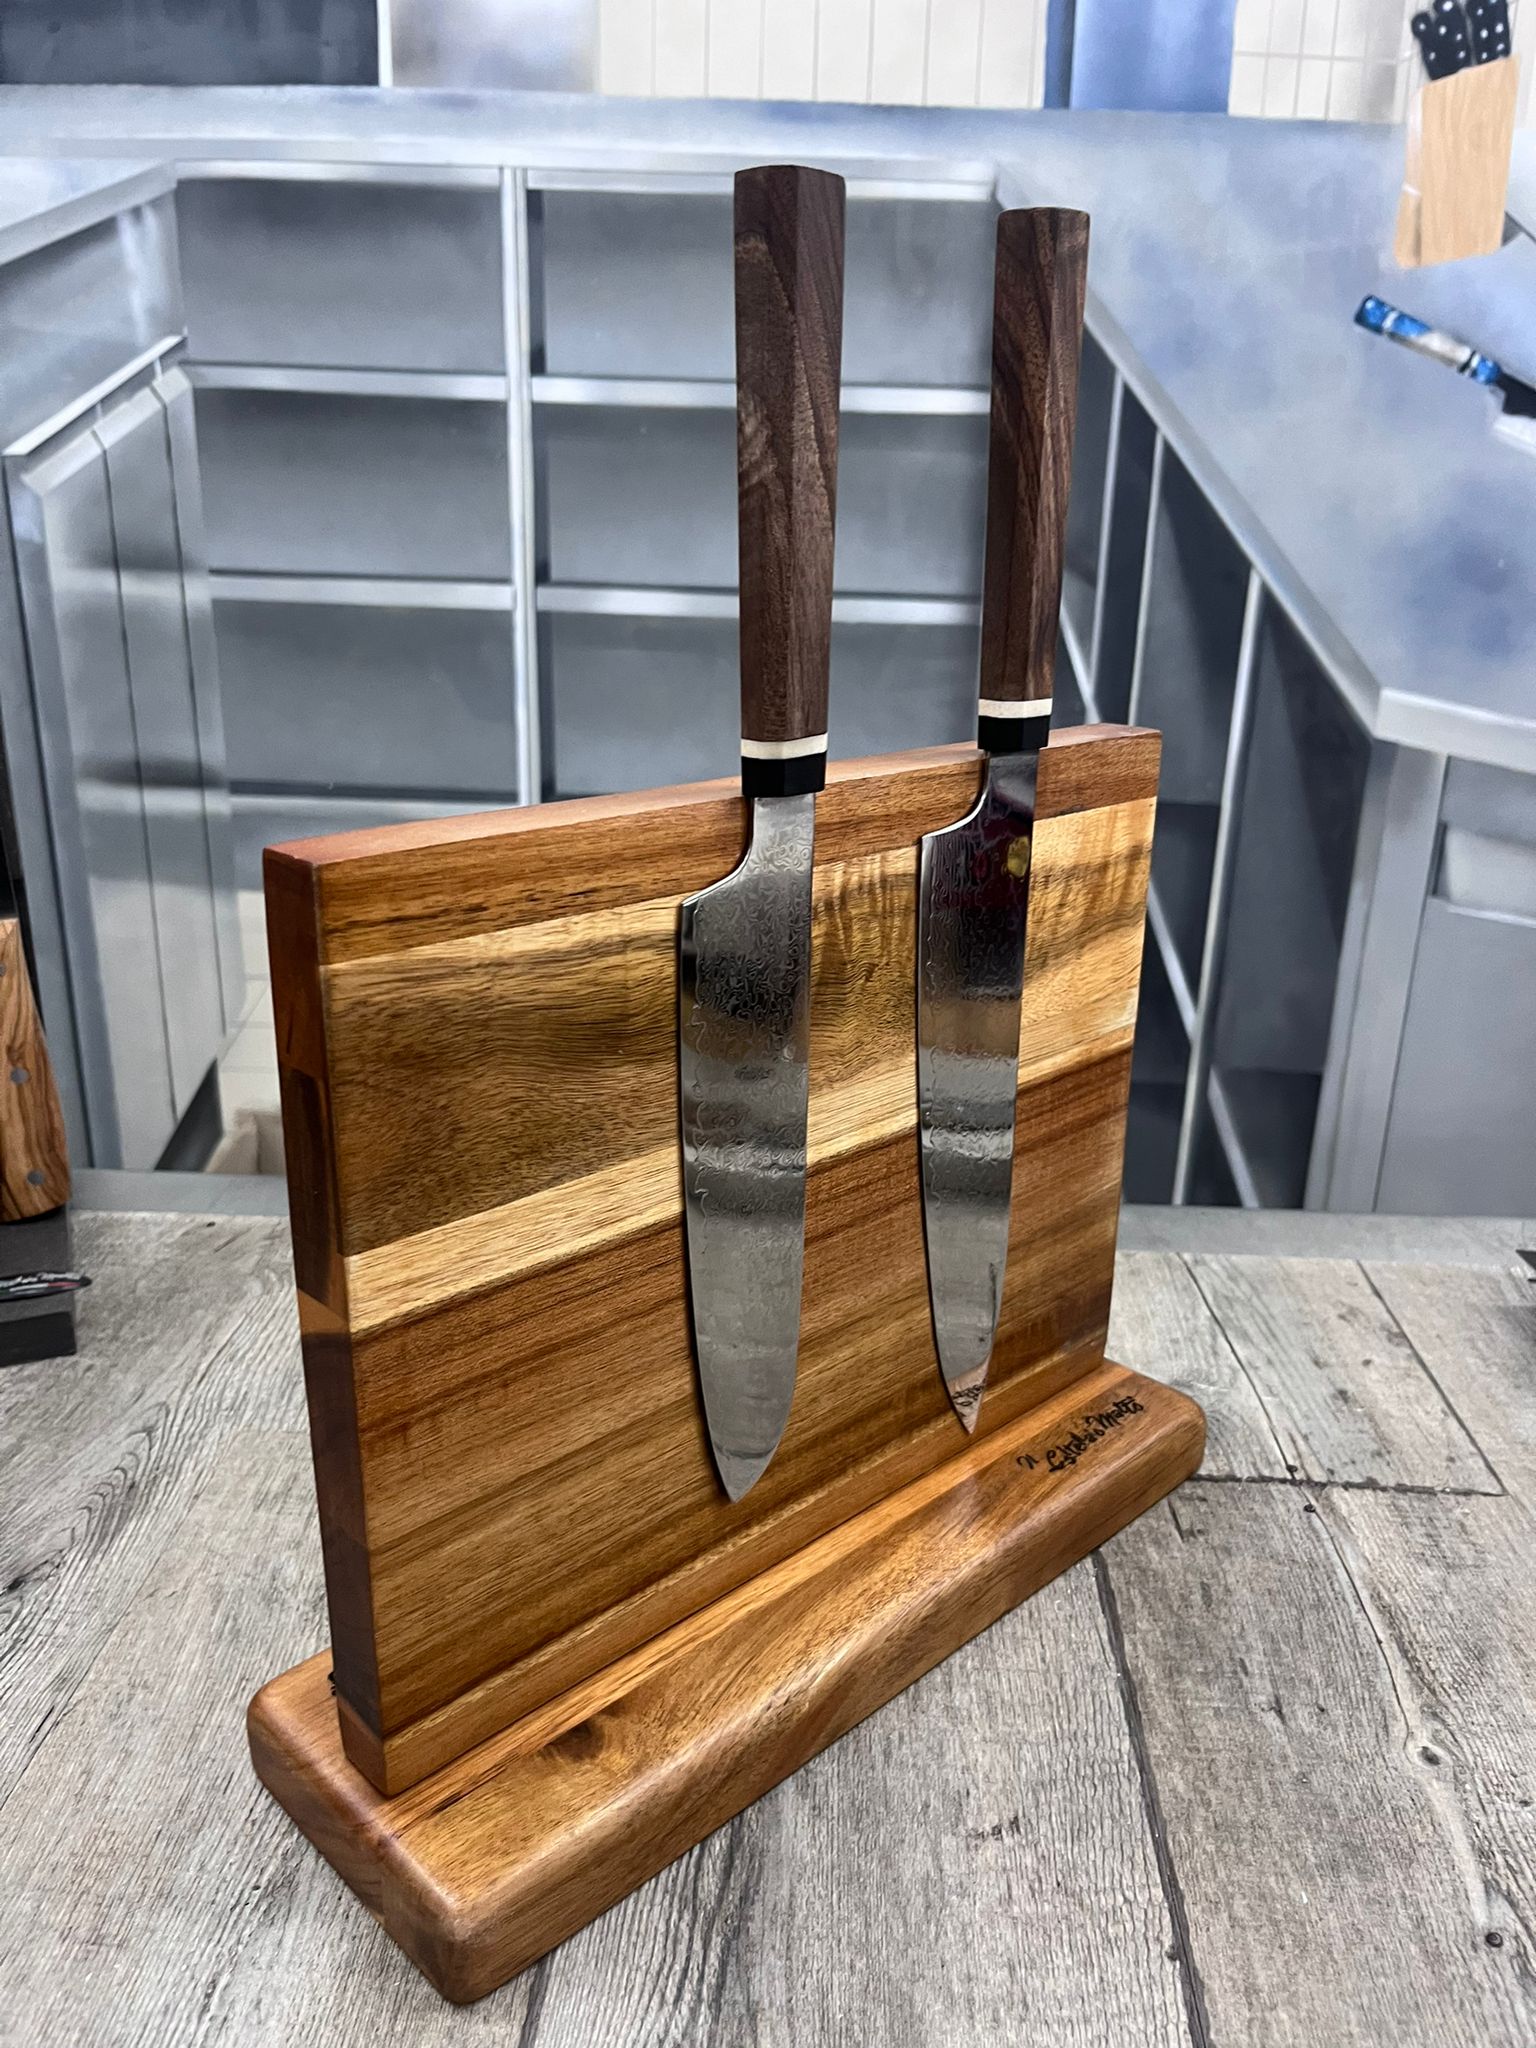 Ceppo in legno con 5 coltelli